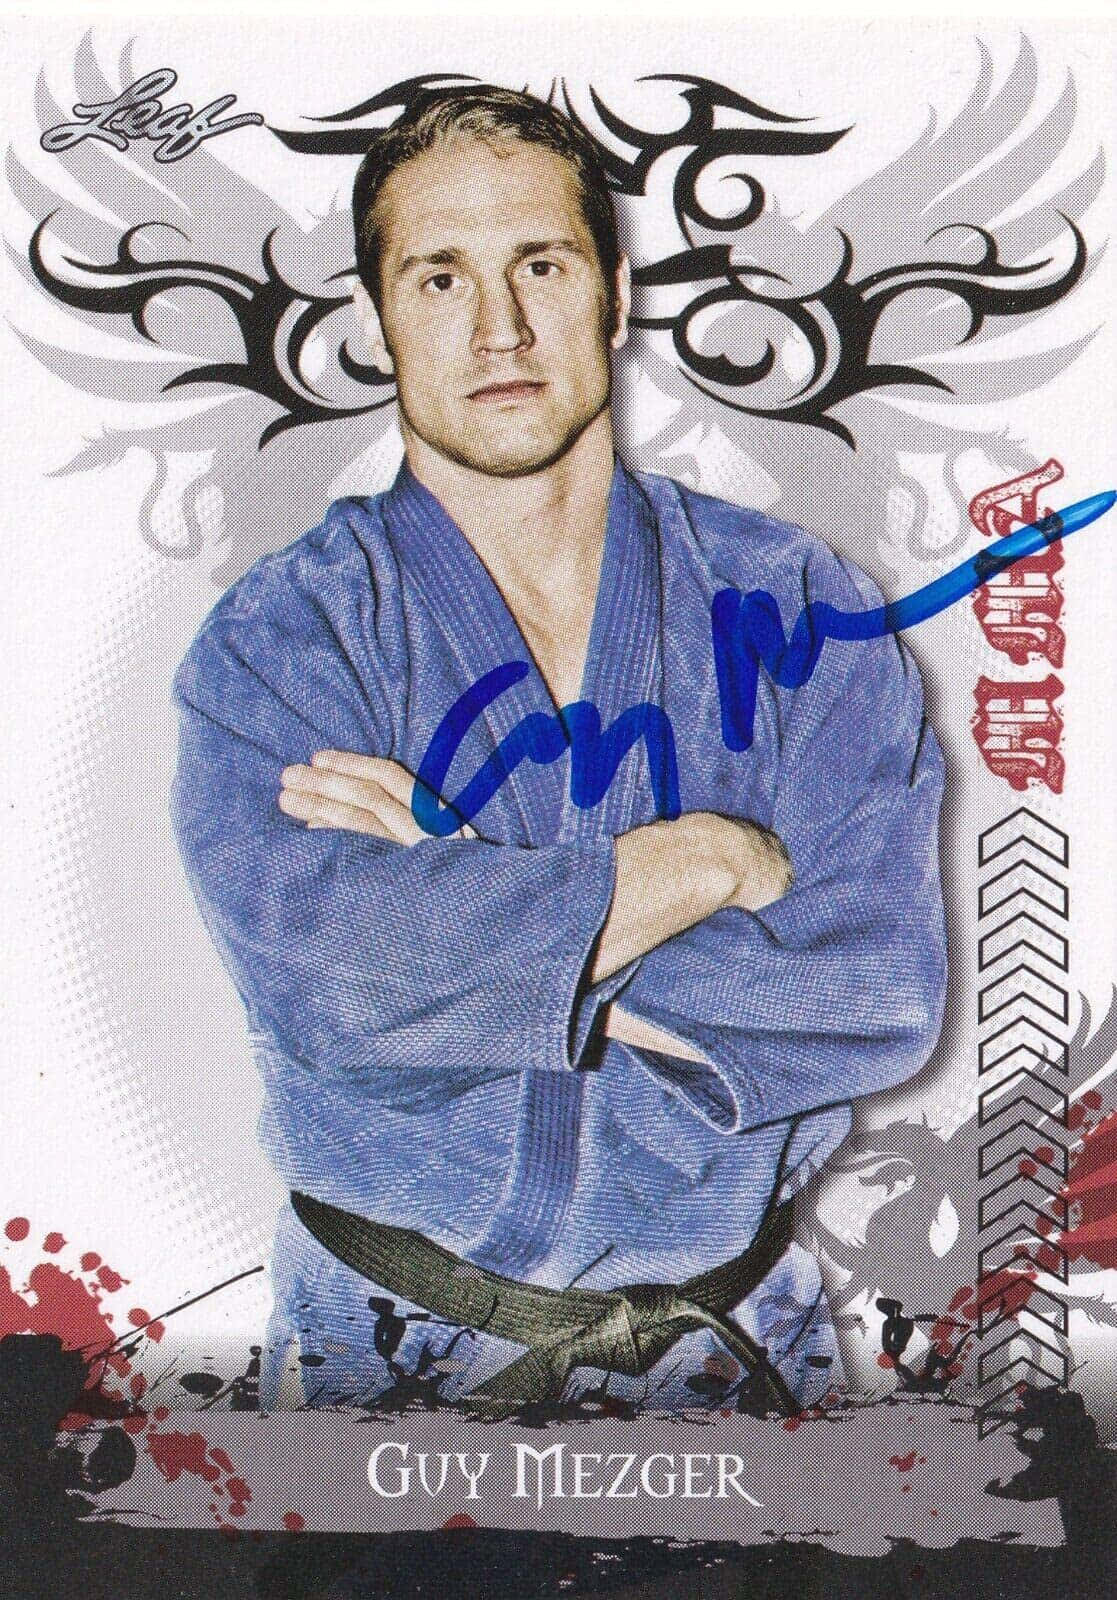 American Martial Arts Fighter Guy Mezger Illustration Wallpaper